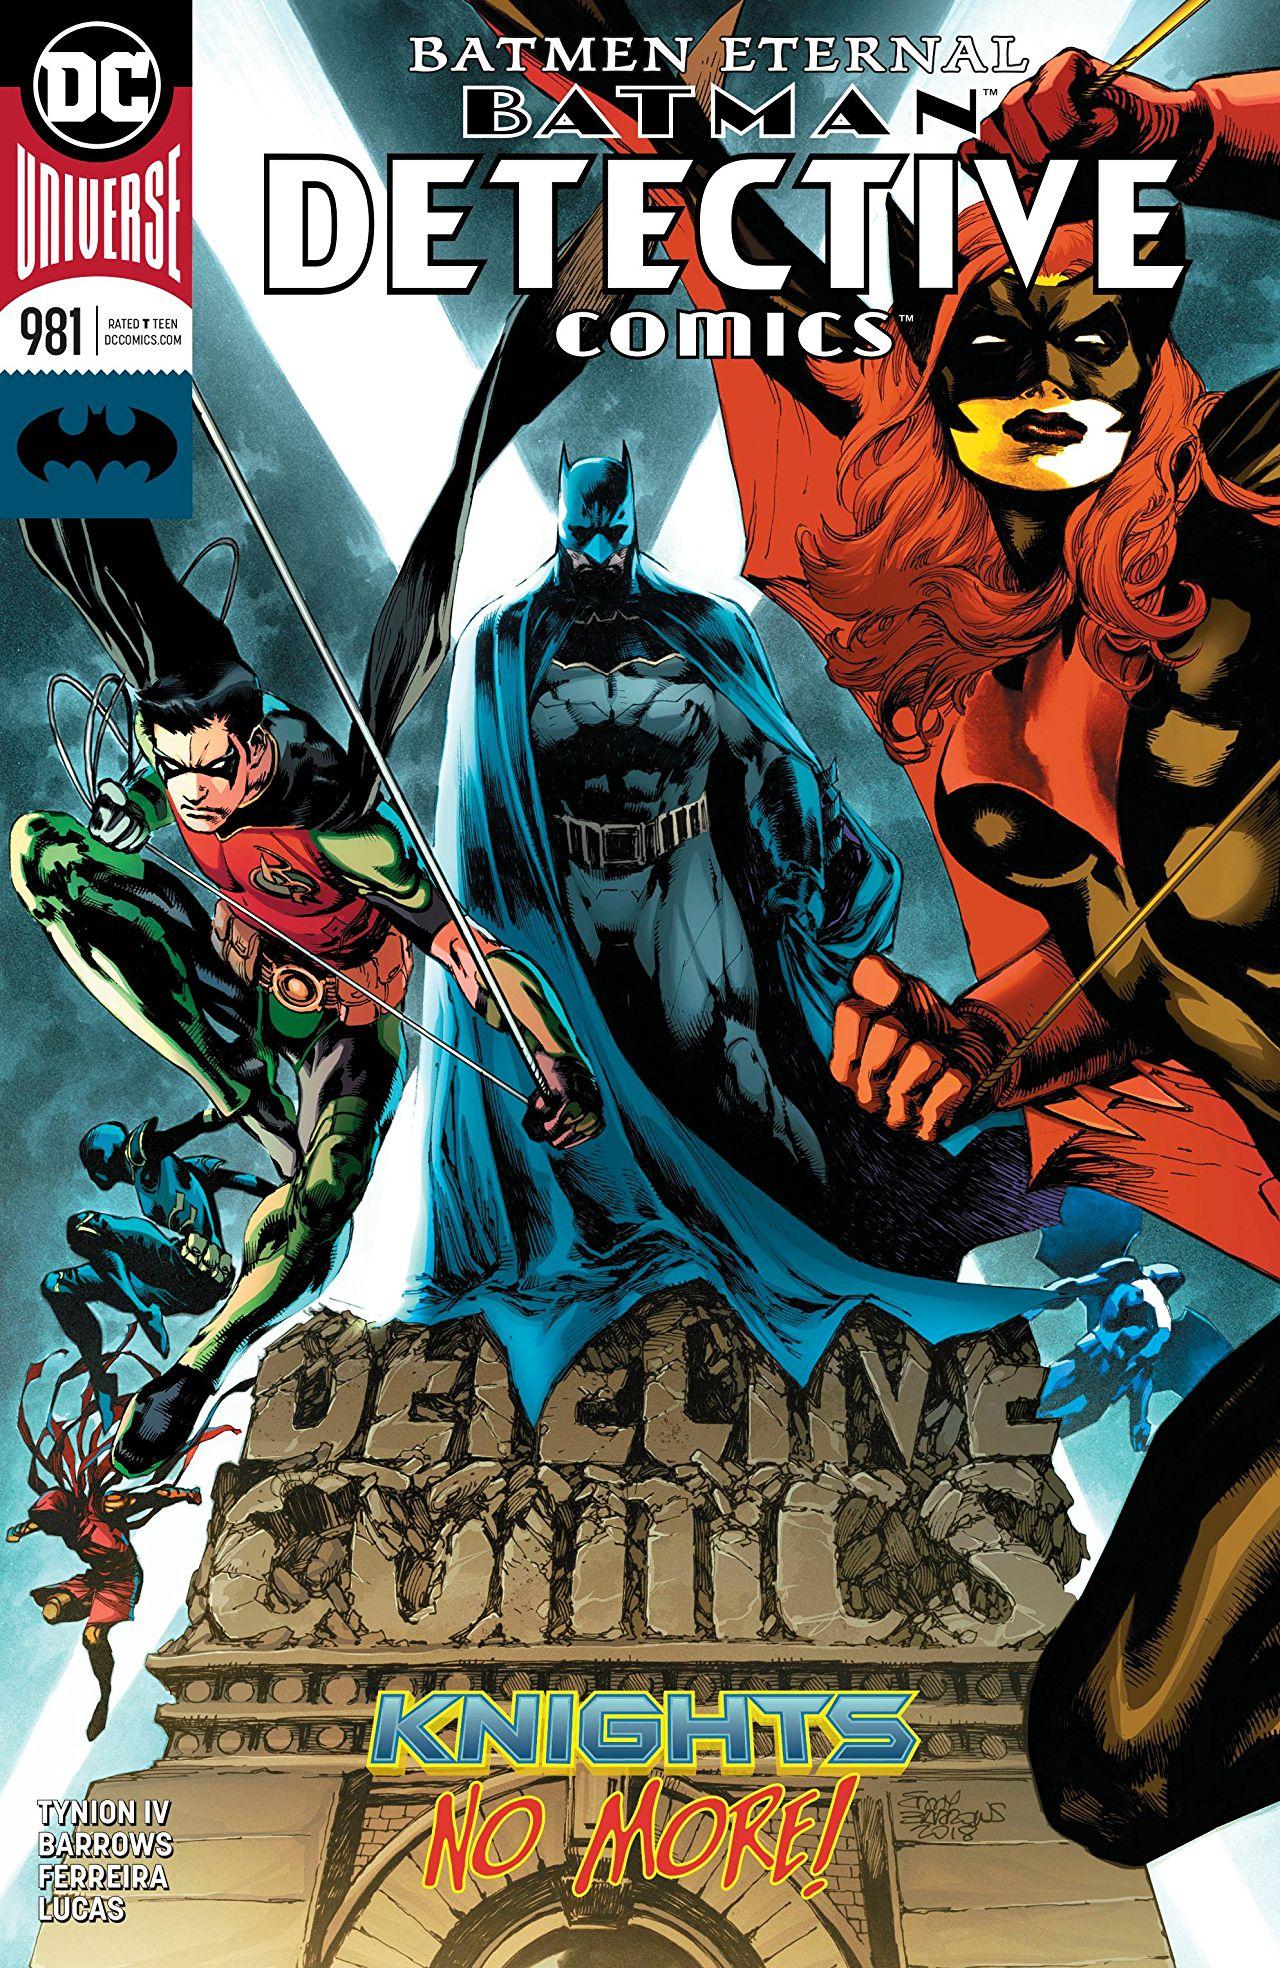 Detective Comics Vol. 1 #981